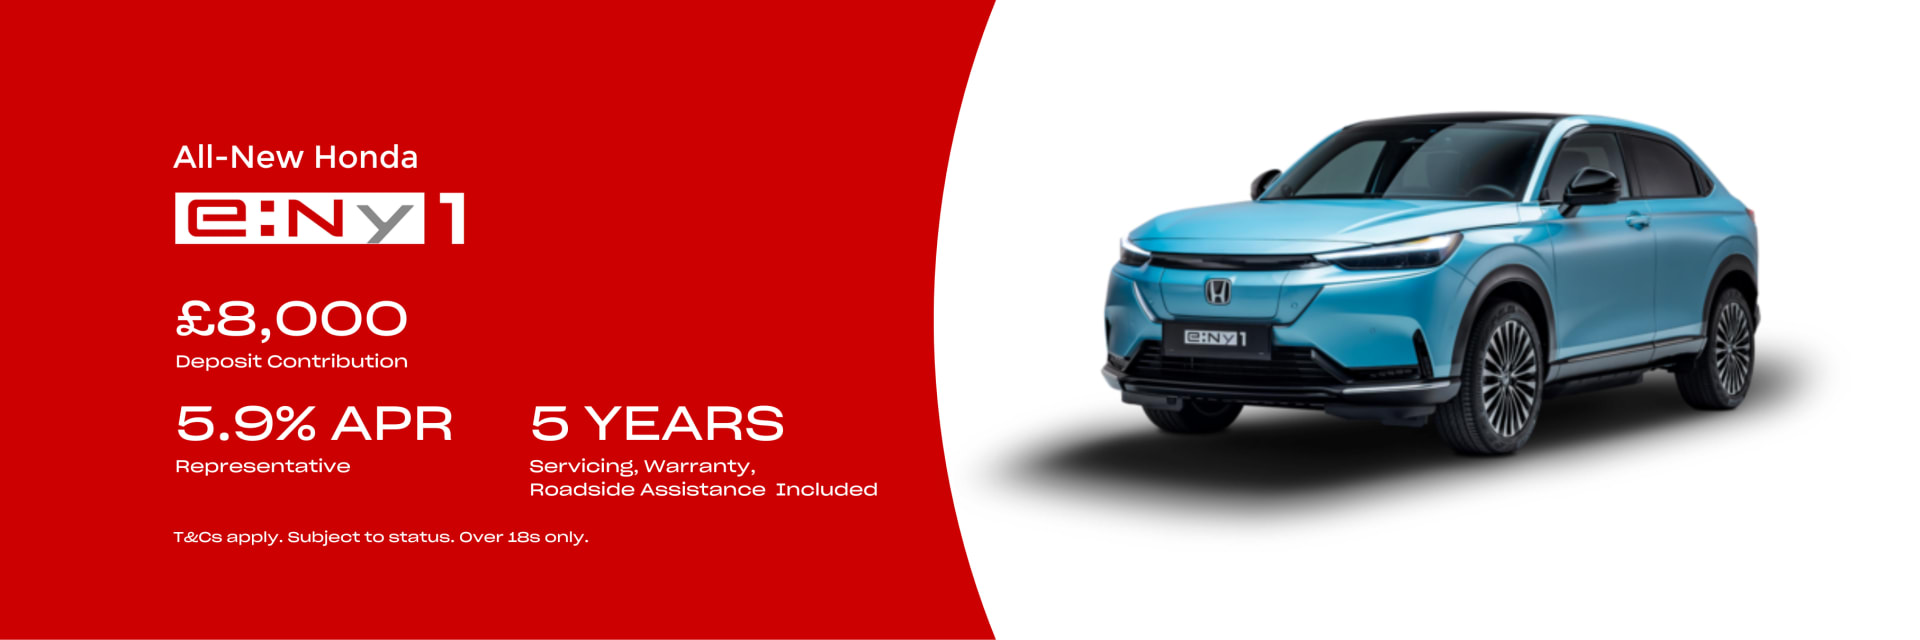 Honda e:Ny1 New Car Offer